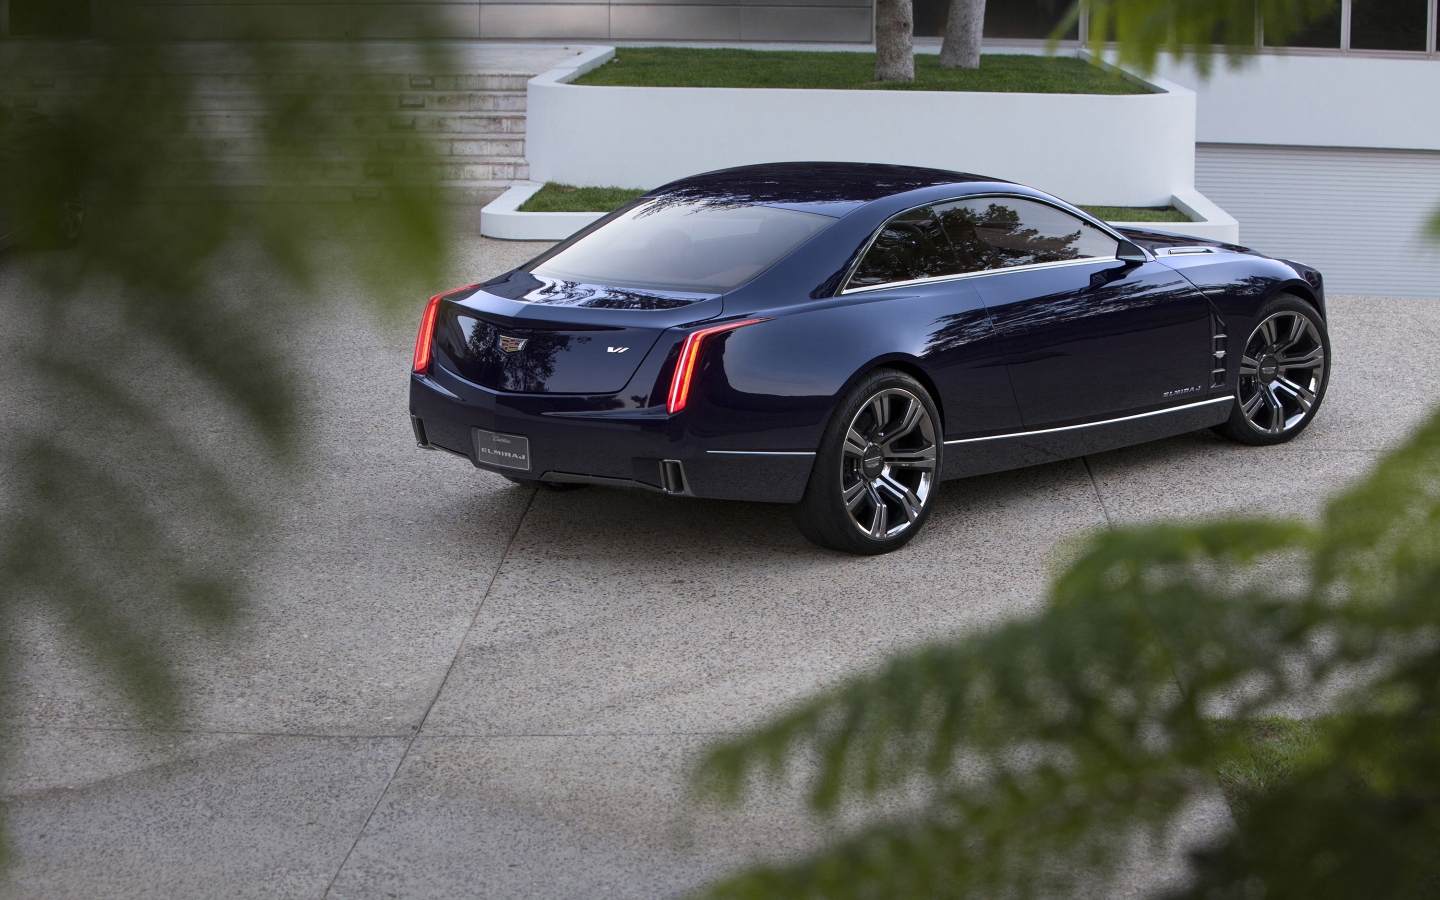 Cadillac Elmiraj Rear for 1440 x 900 widescreen resolution